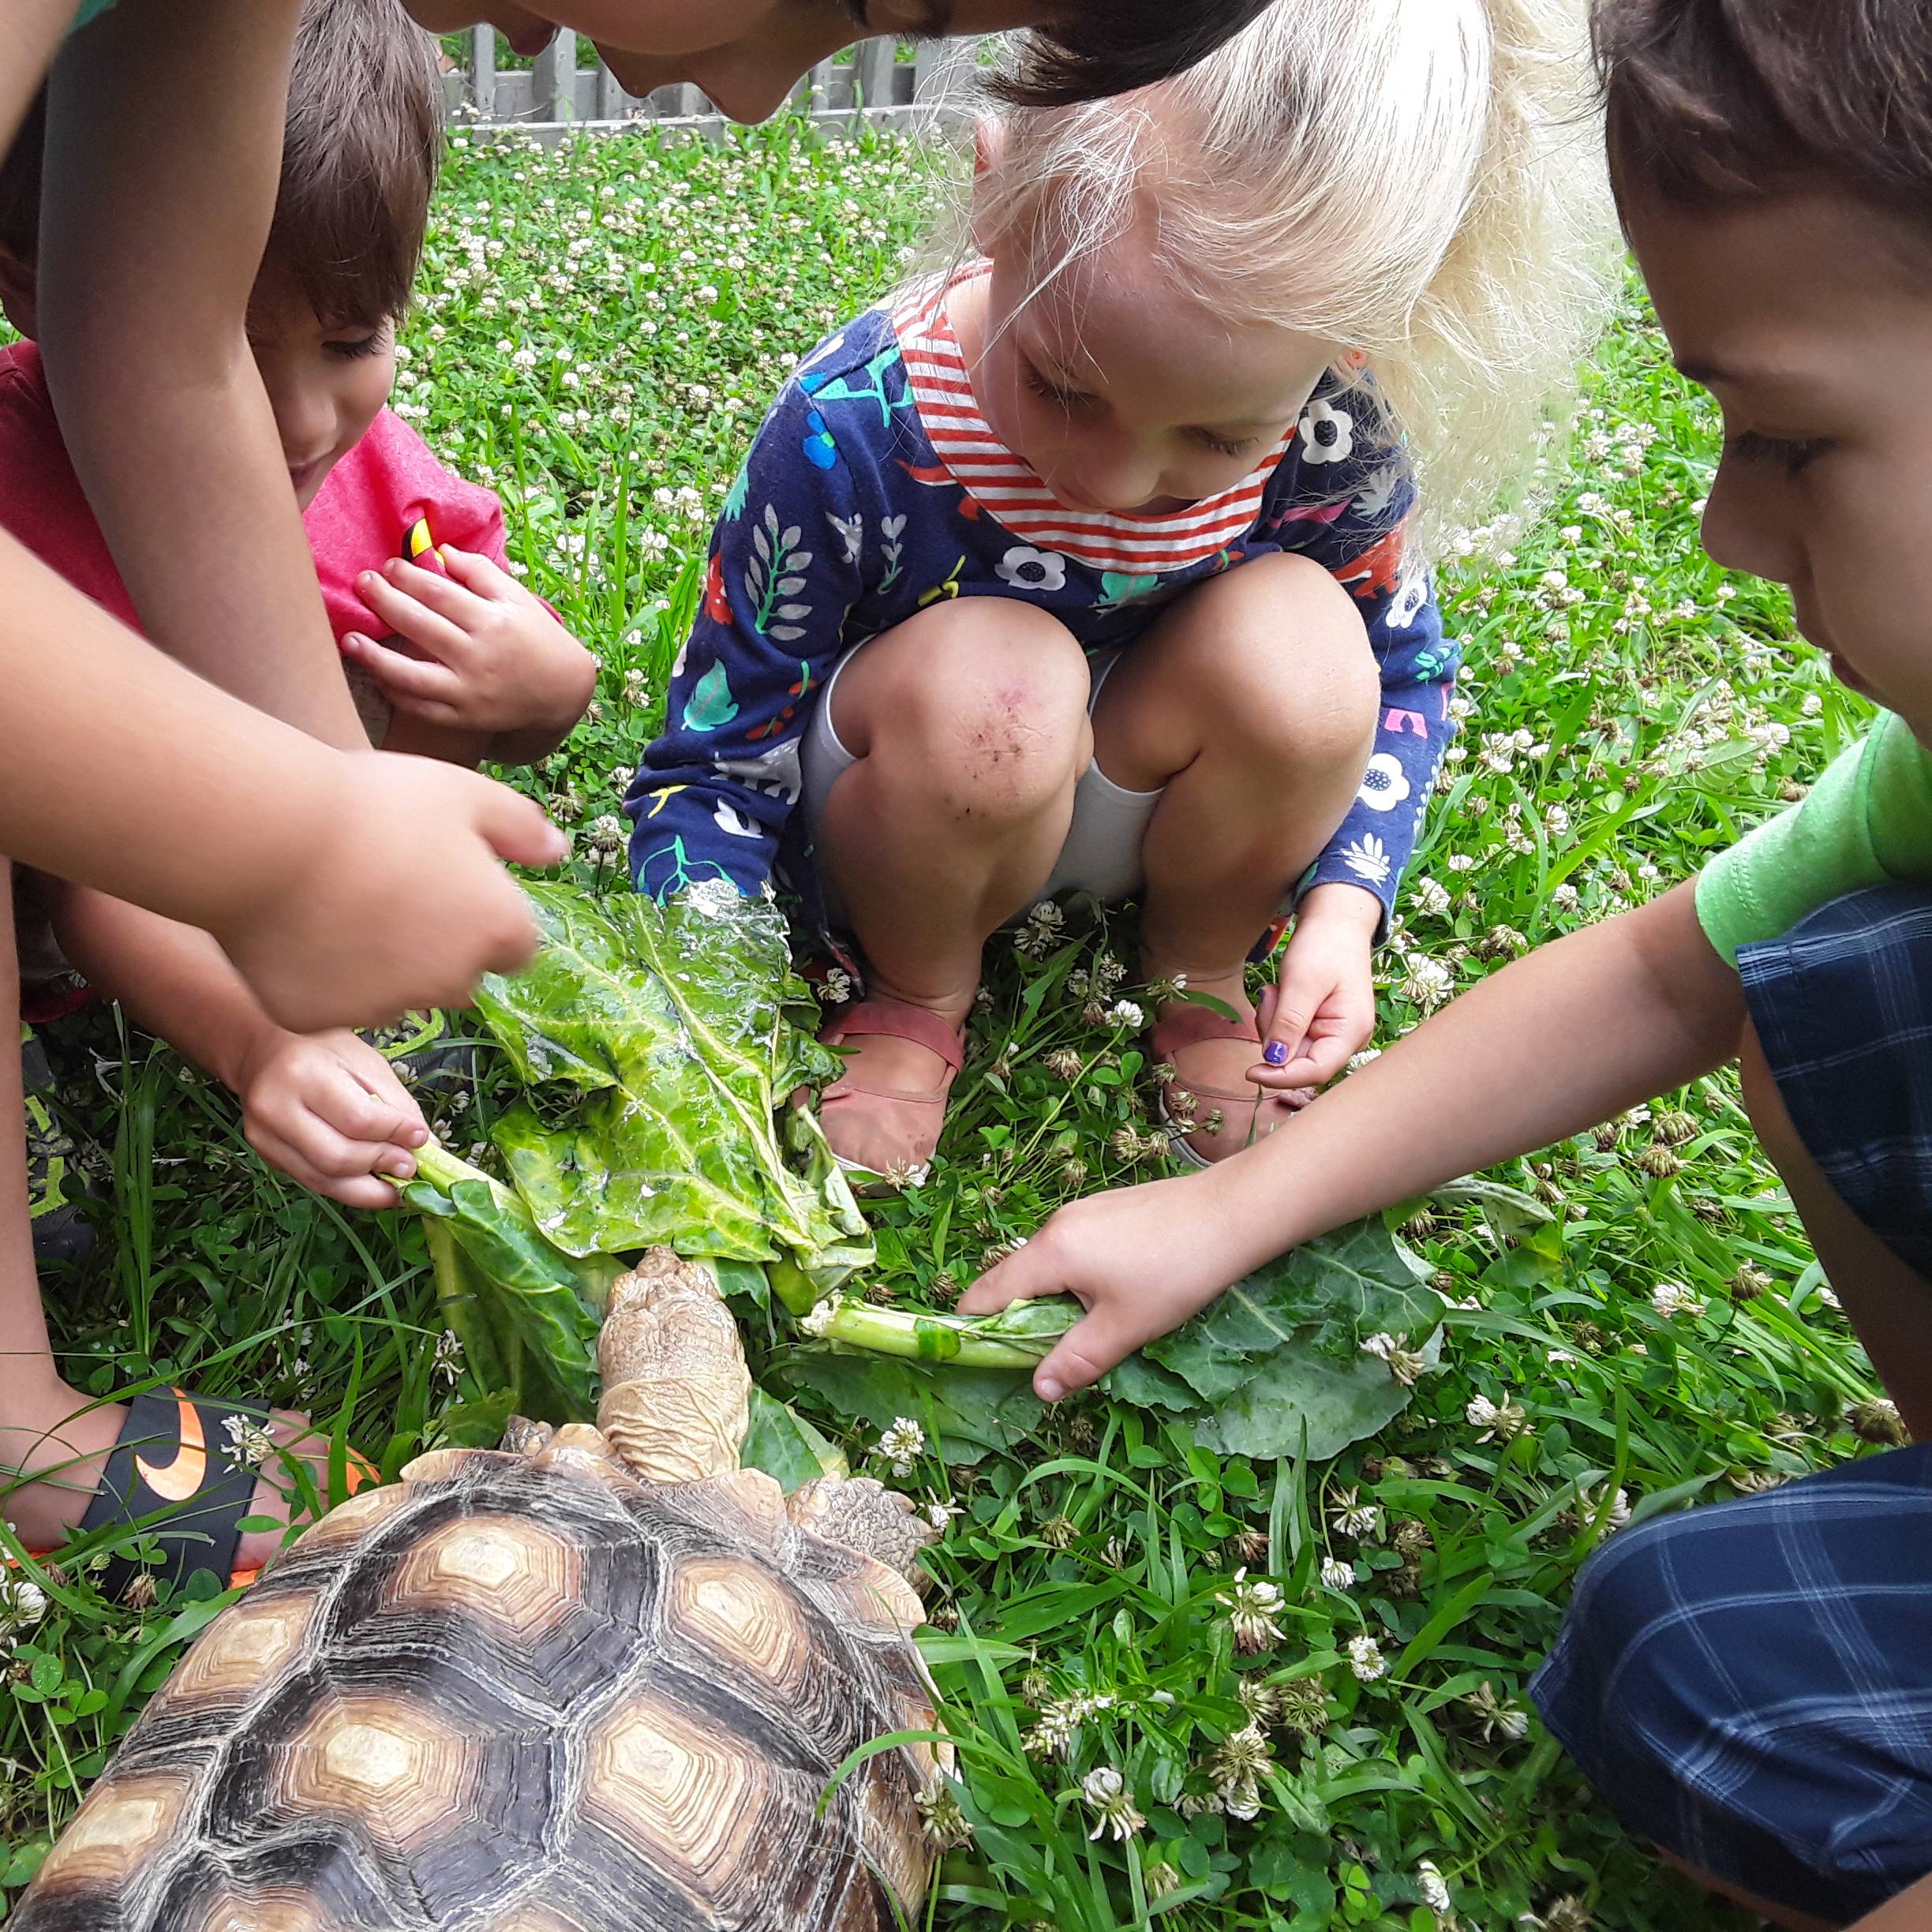 kids feeding a tortoise greens